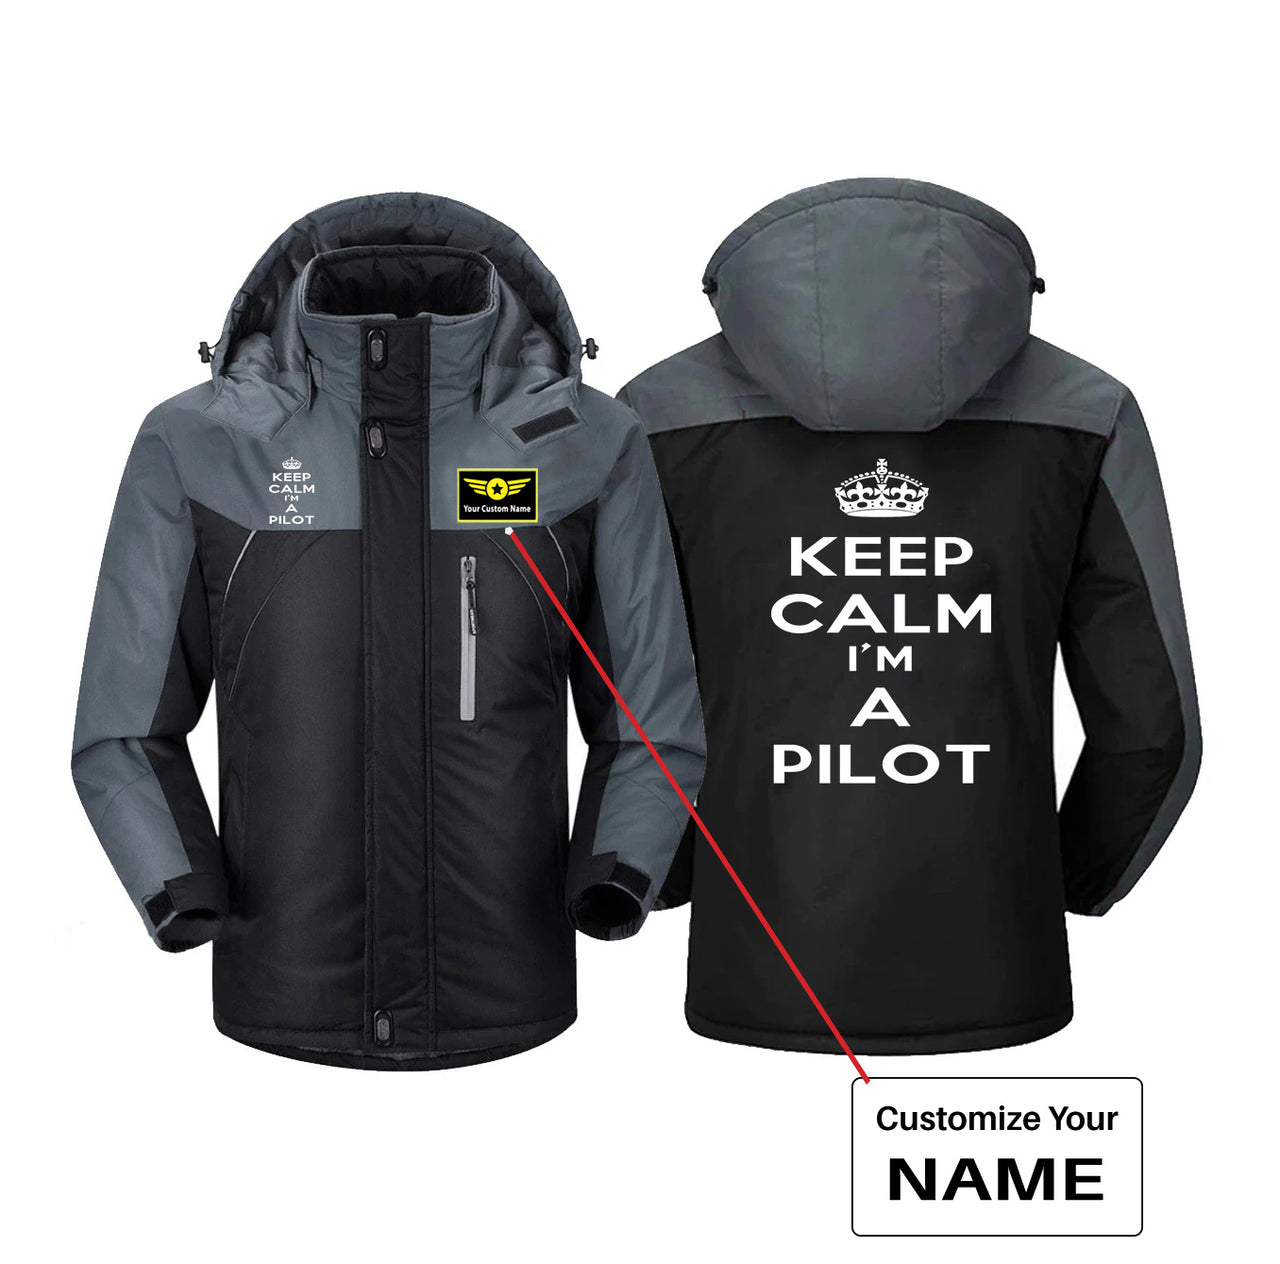 Keep Calm I'm a Pilot Designed Thick Winter Jackets